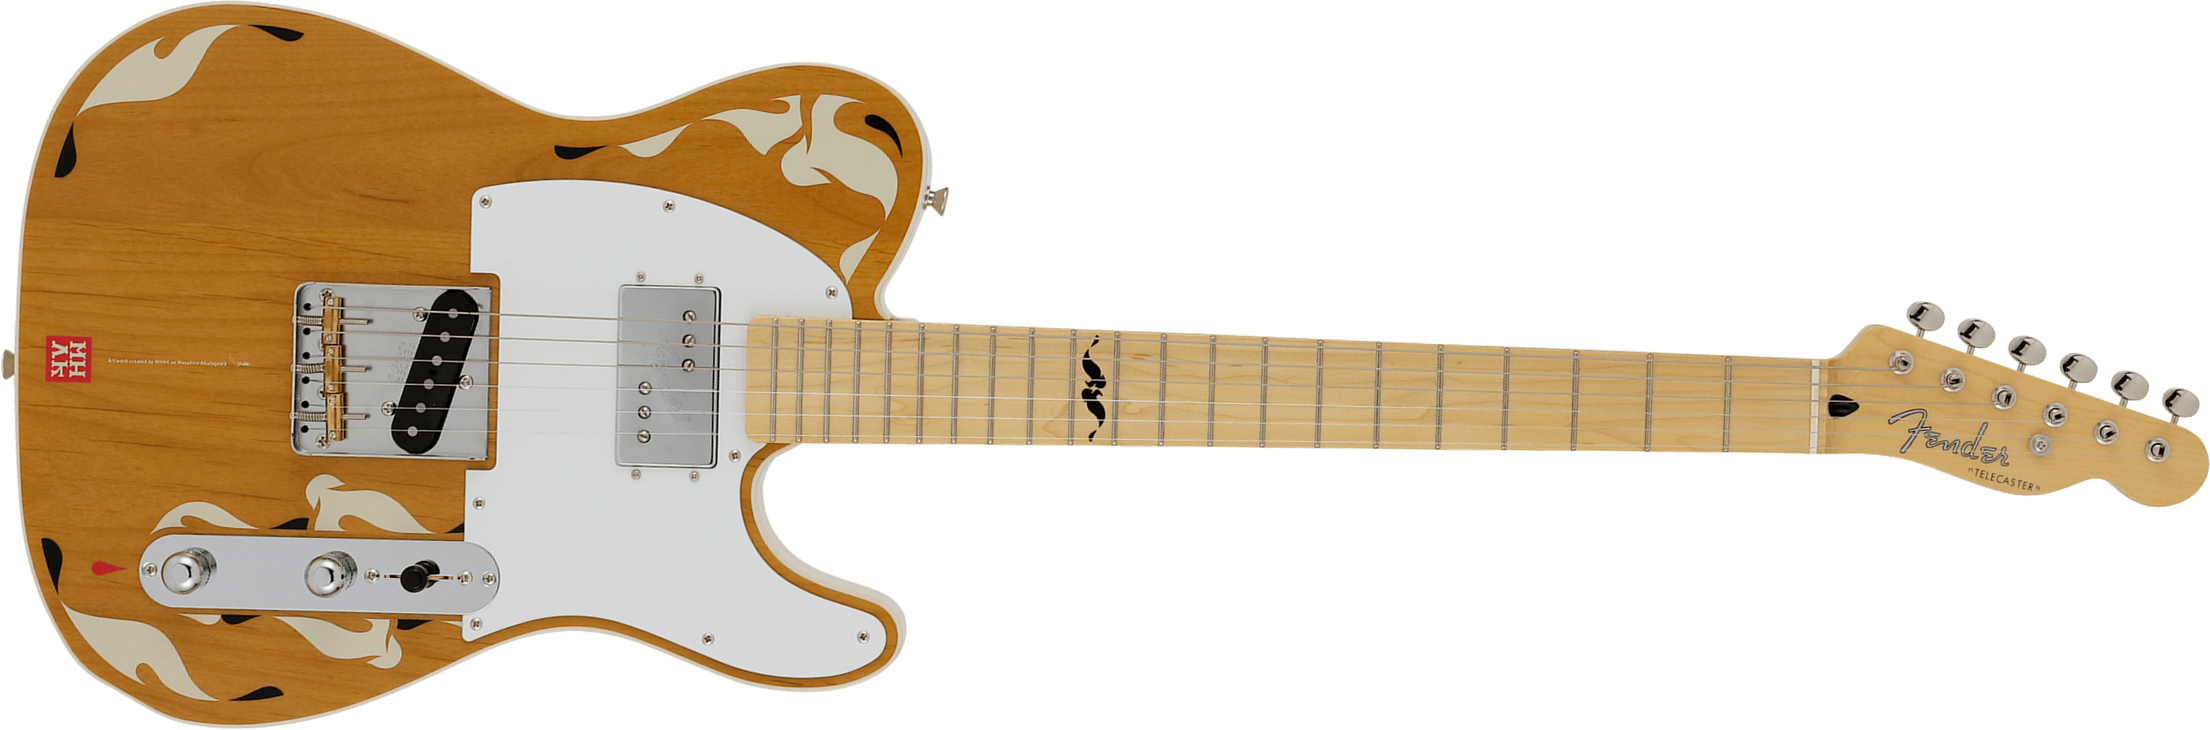 Fender Tele Mhak  Art Gallery Jap Hs Mn - Natural - Guitarra eléctrica con forma de tel - Main picture